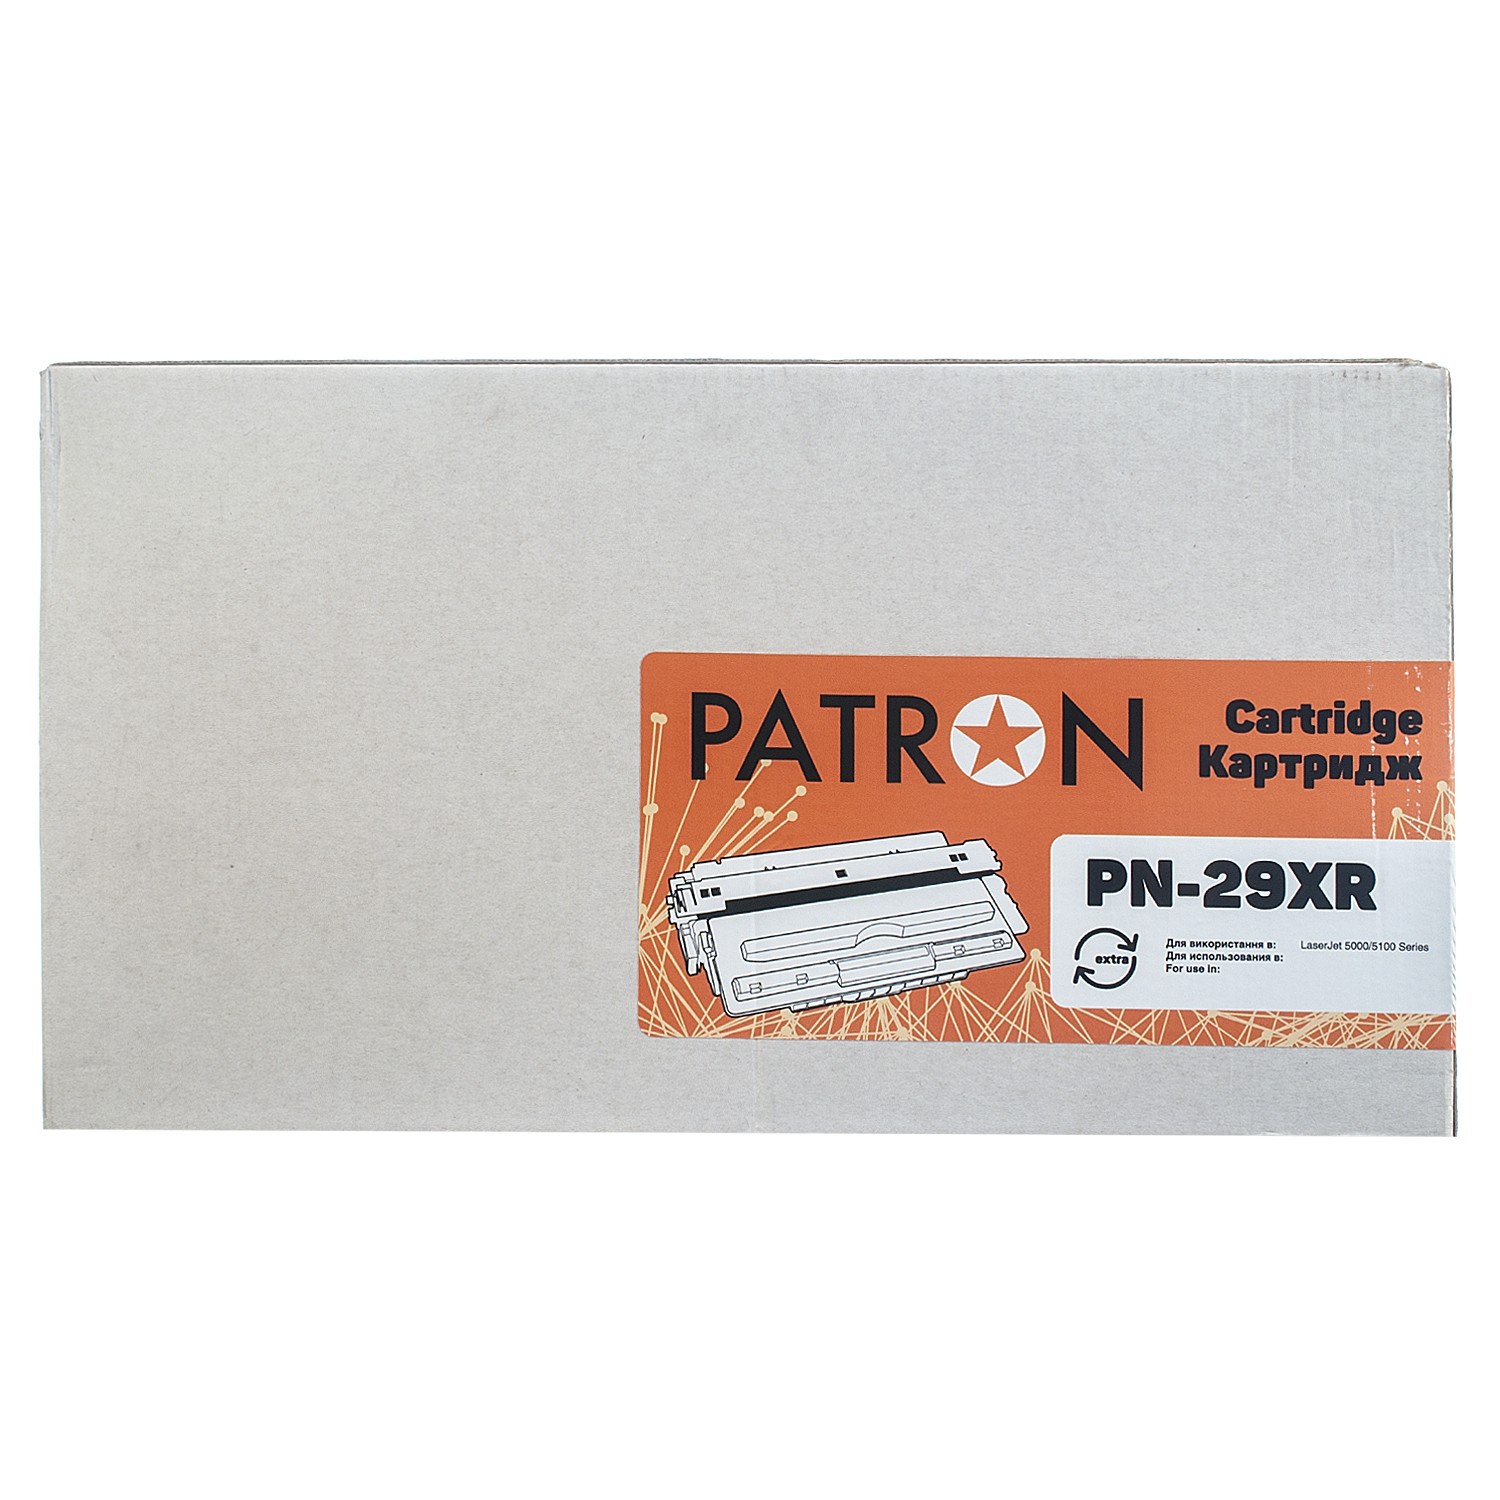 КАРТРИДЖ HP LJ C4129X (PN-29XR) PATRON Extra